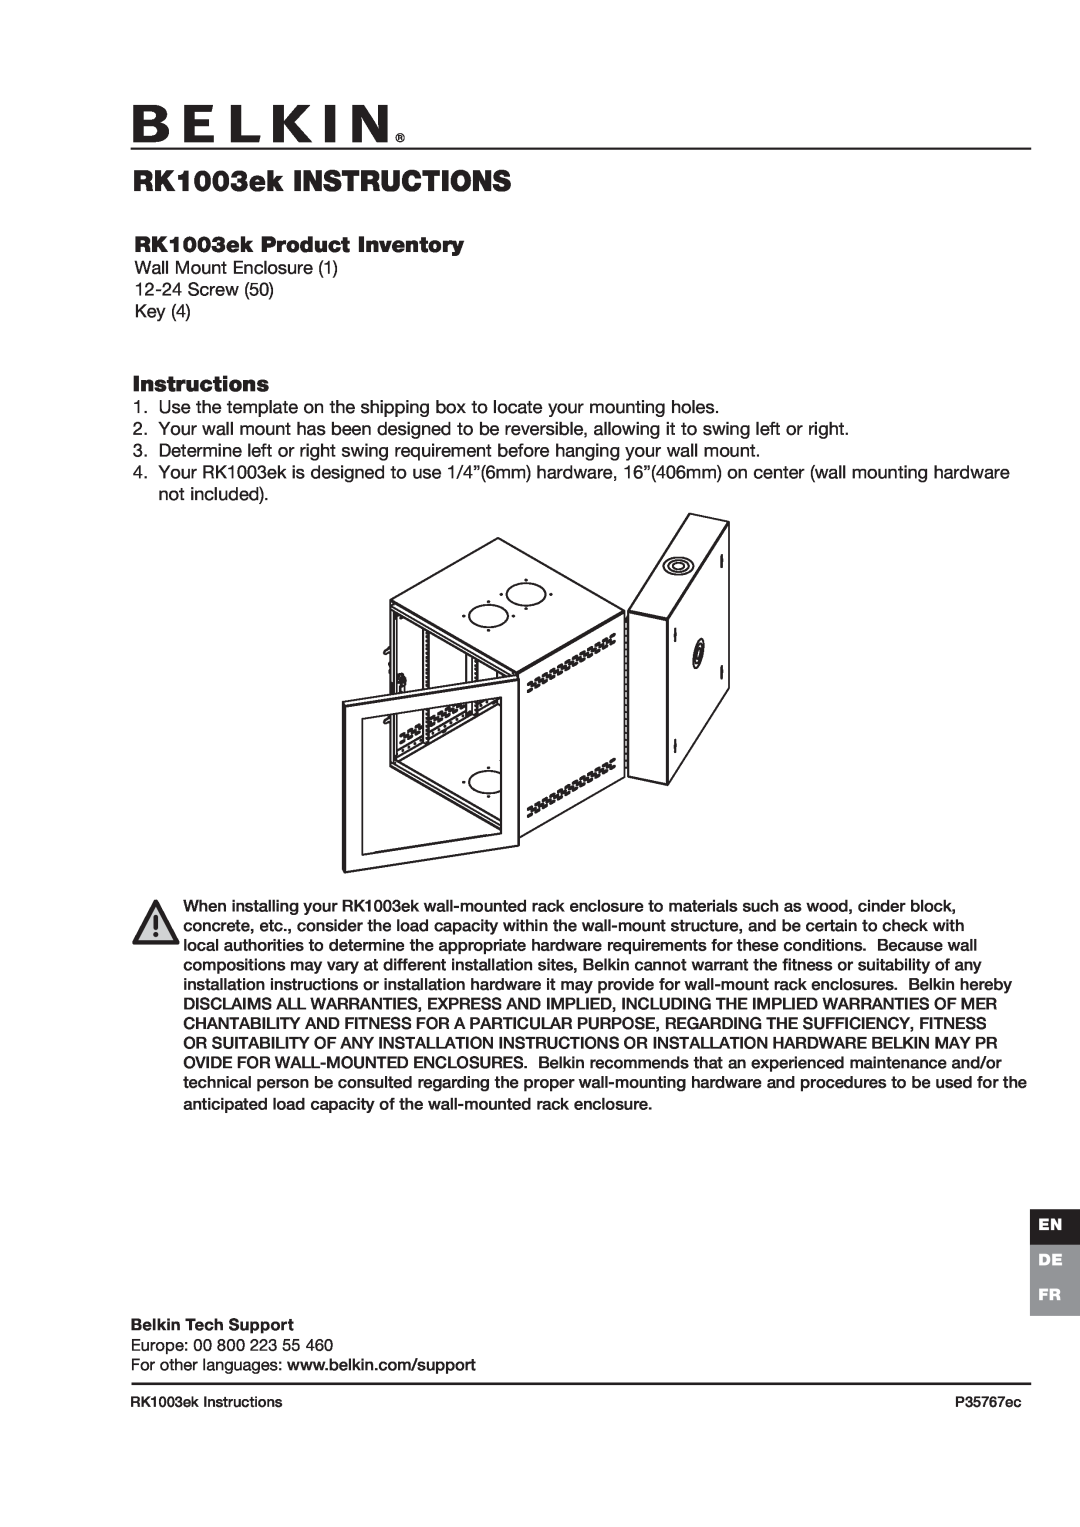 Belkin P35767ec installation instructions RK1003ek INSTRUCTIONS, RK1003ek Product Inventory, Instructions 